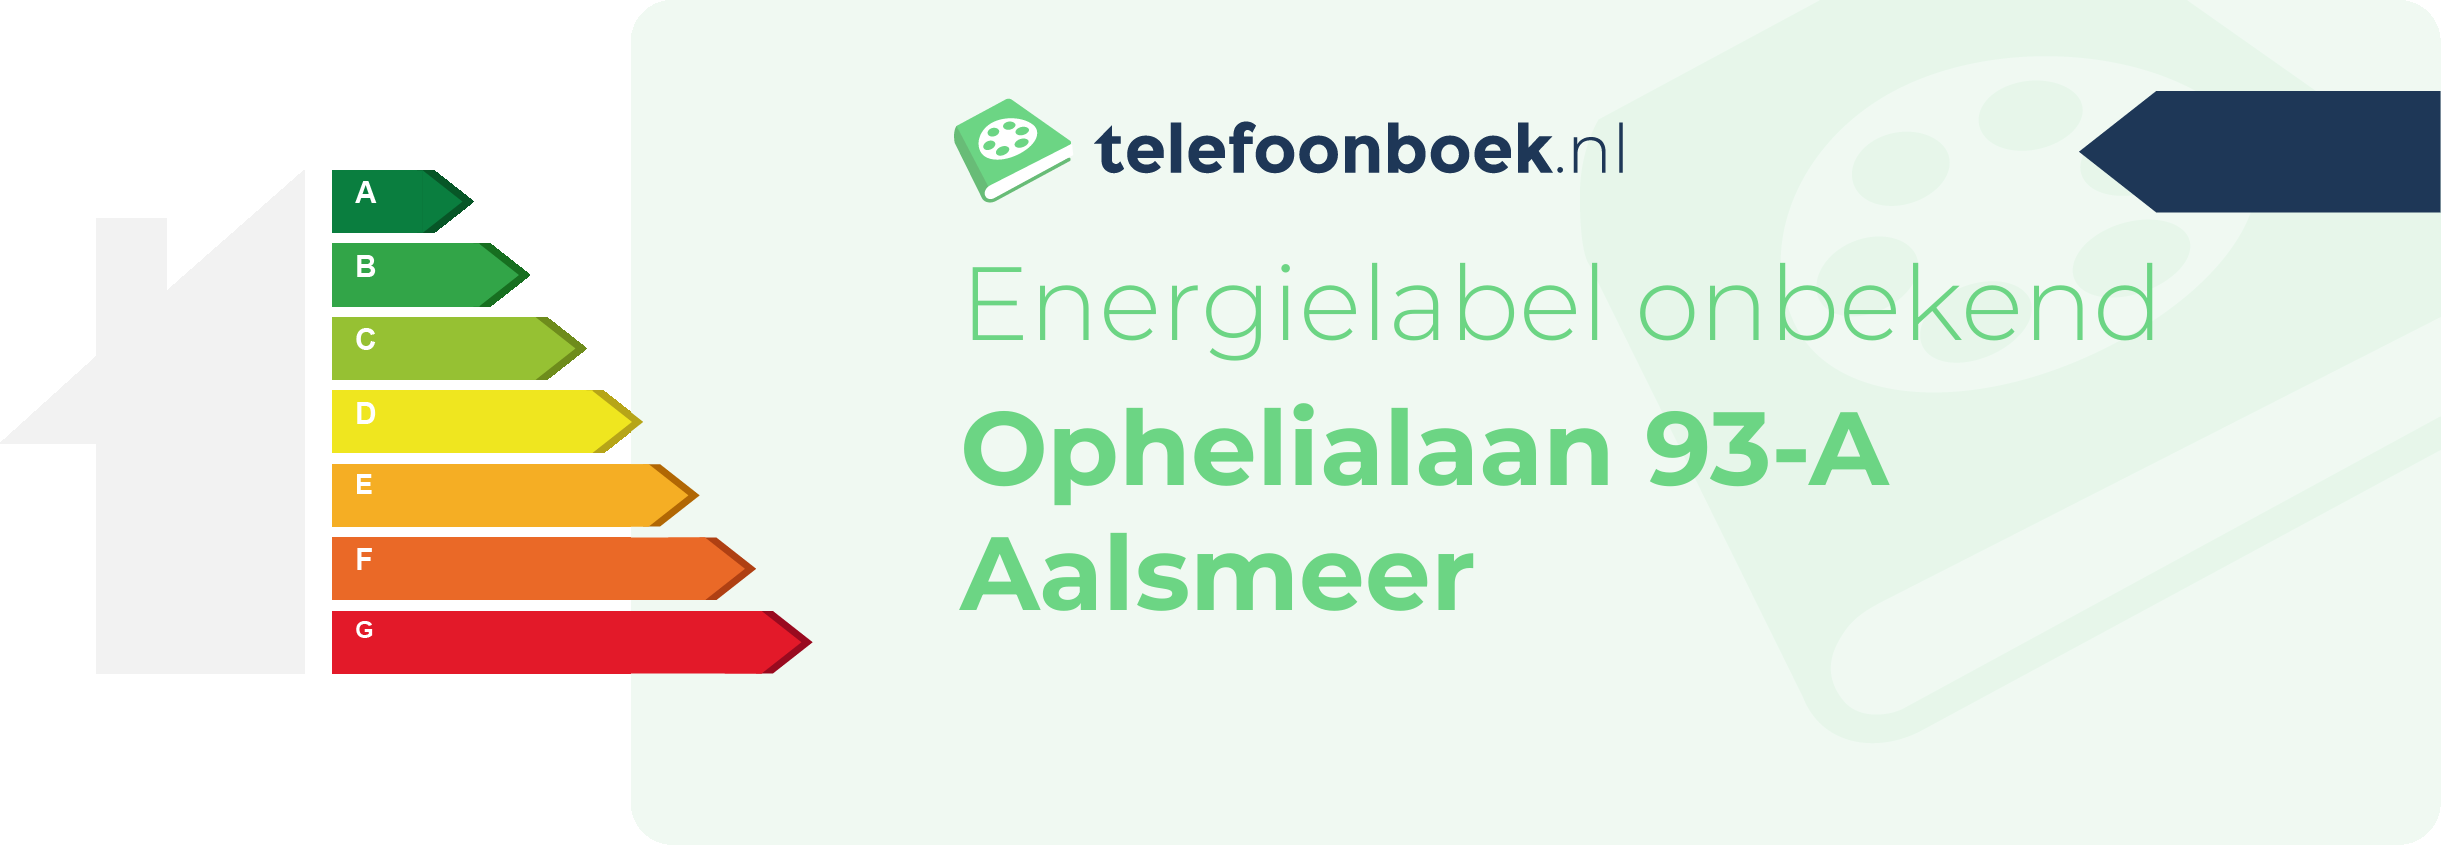 Energielabel Ophelialaan 93-A Aalsmeer